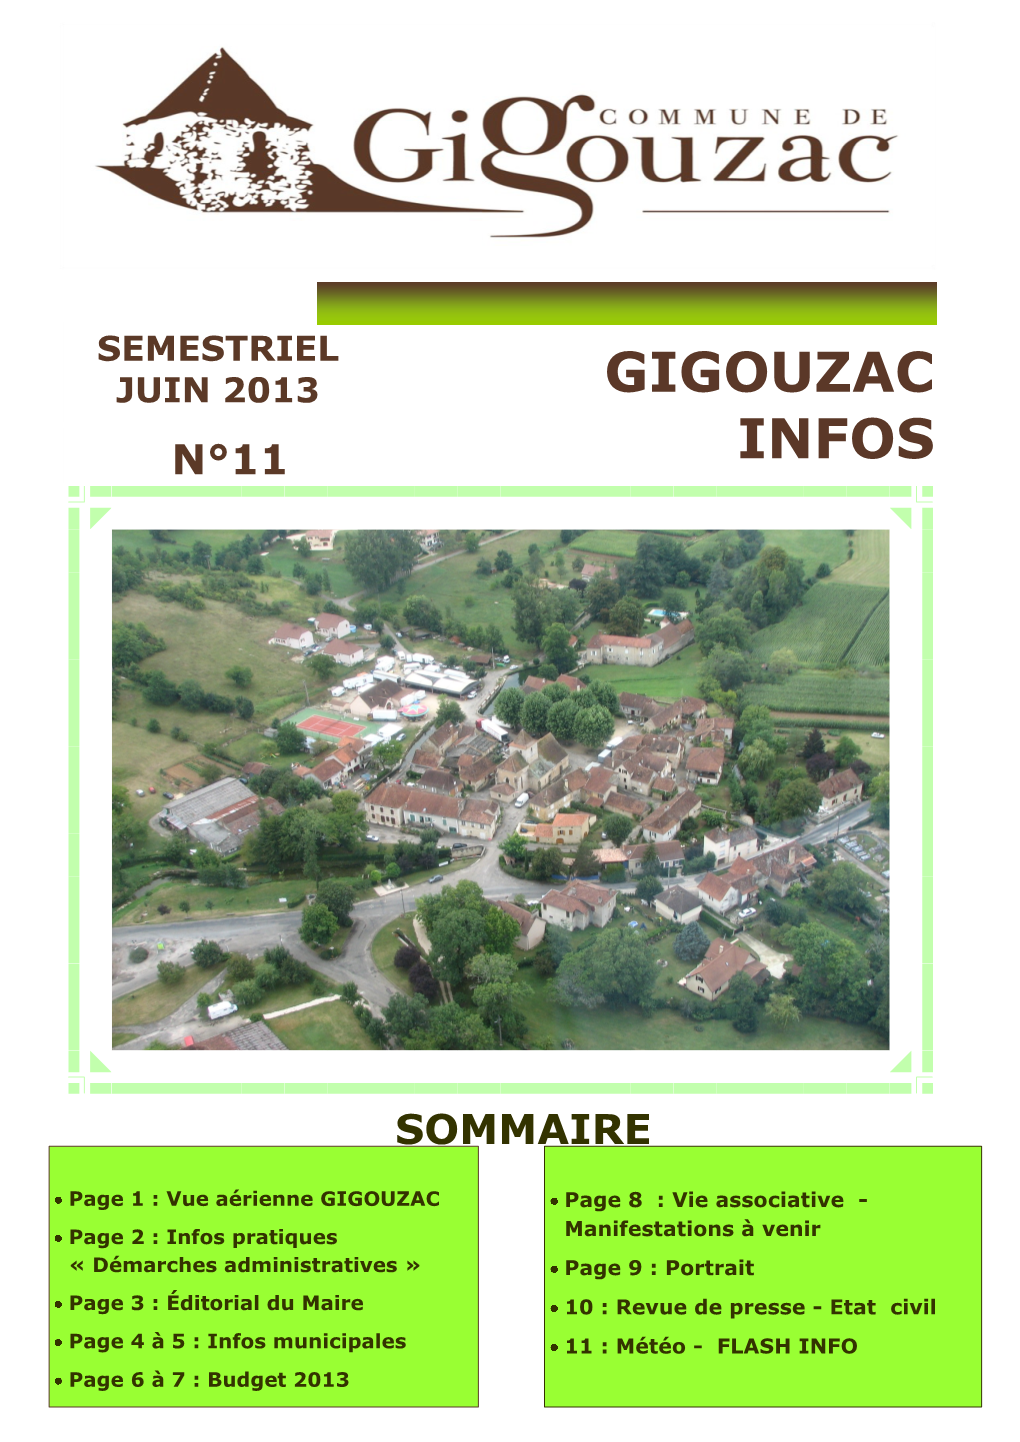 Gigouzac Infos